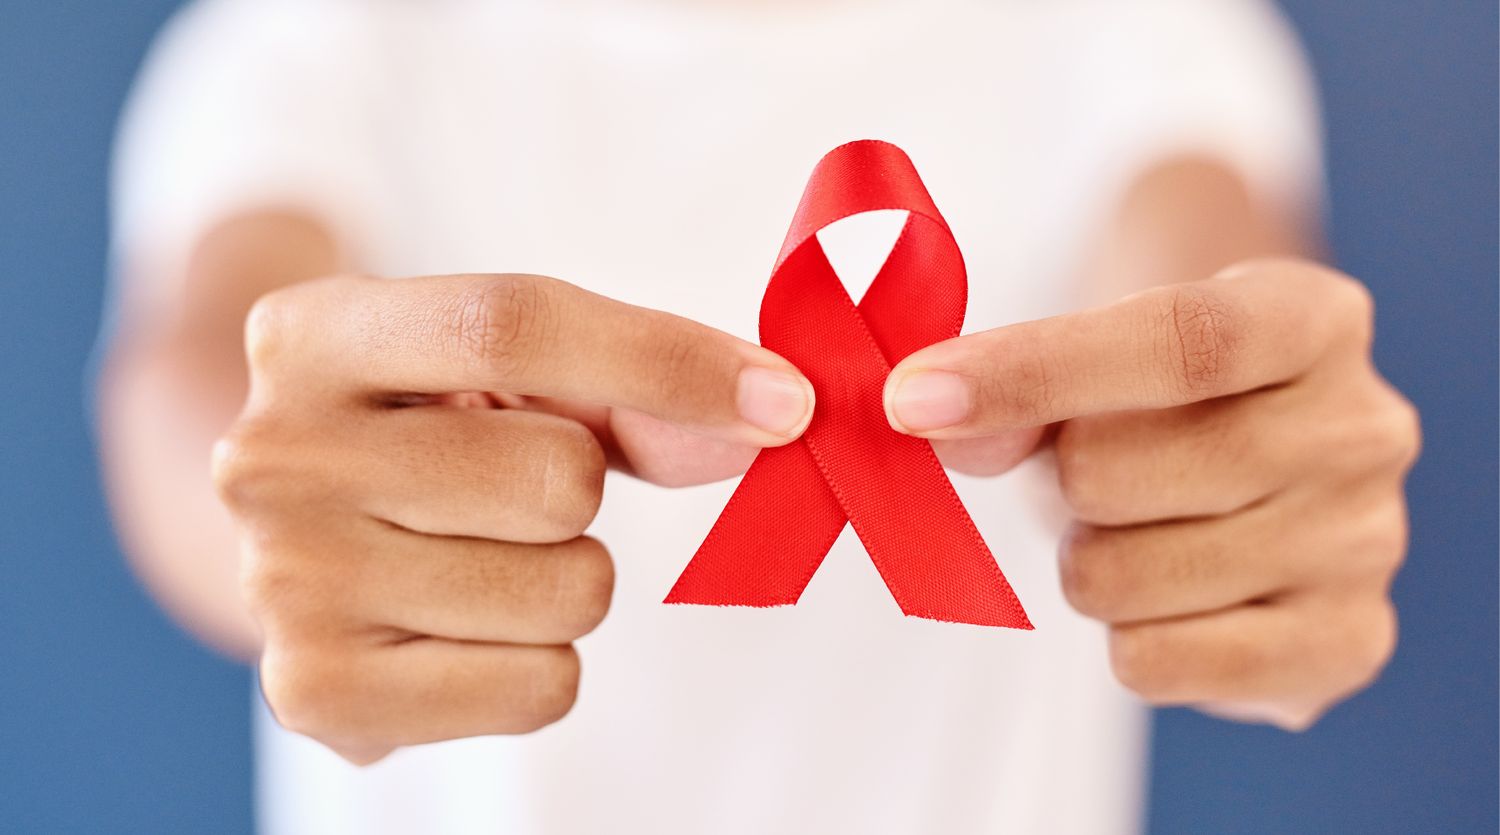 Testeo rápido de VIH Sida en Plaza Belgrano este martes